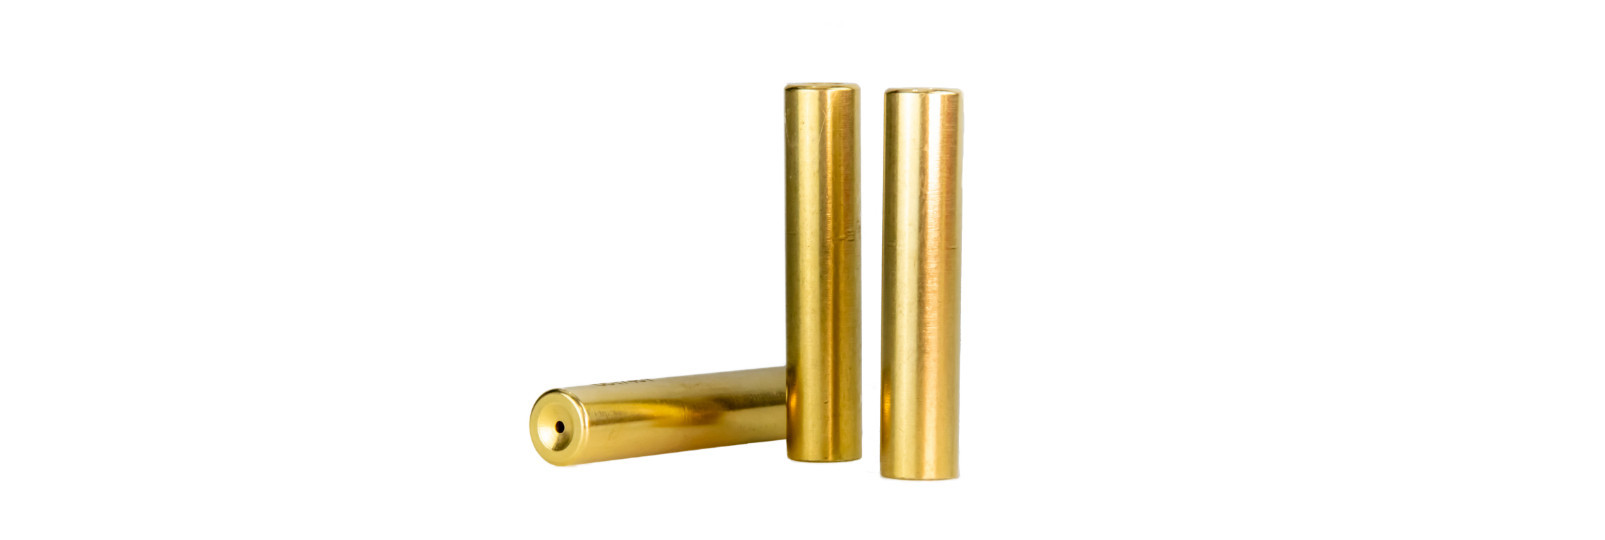 10 brass cases for .451 original bullet